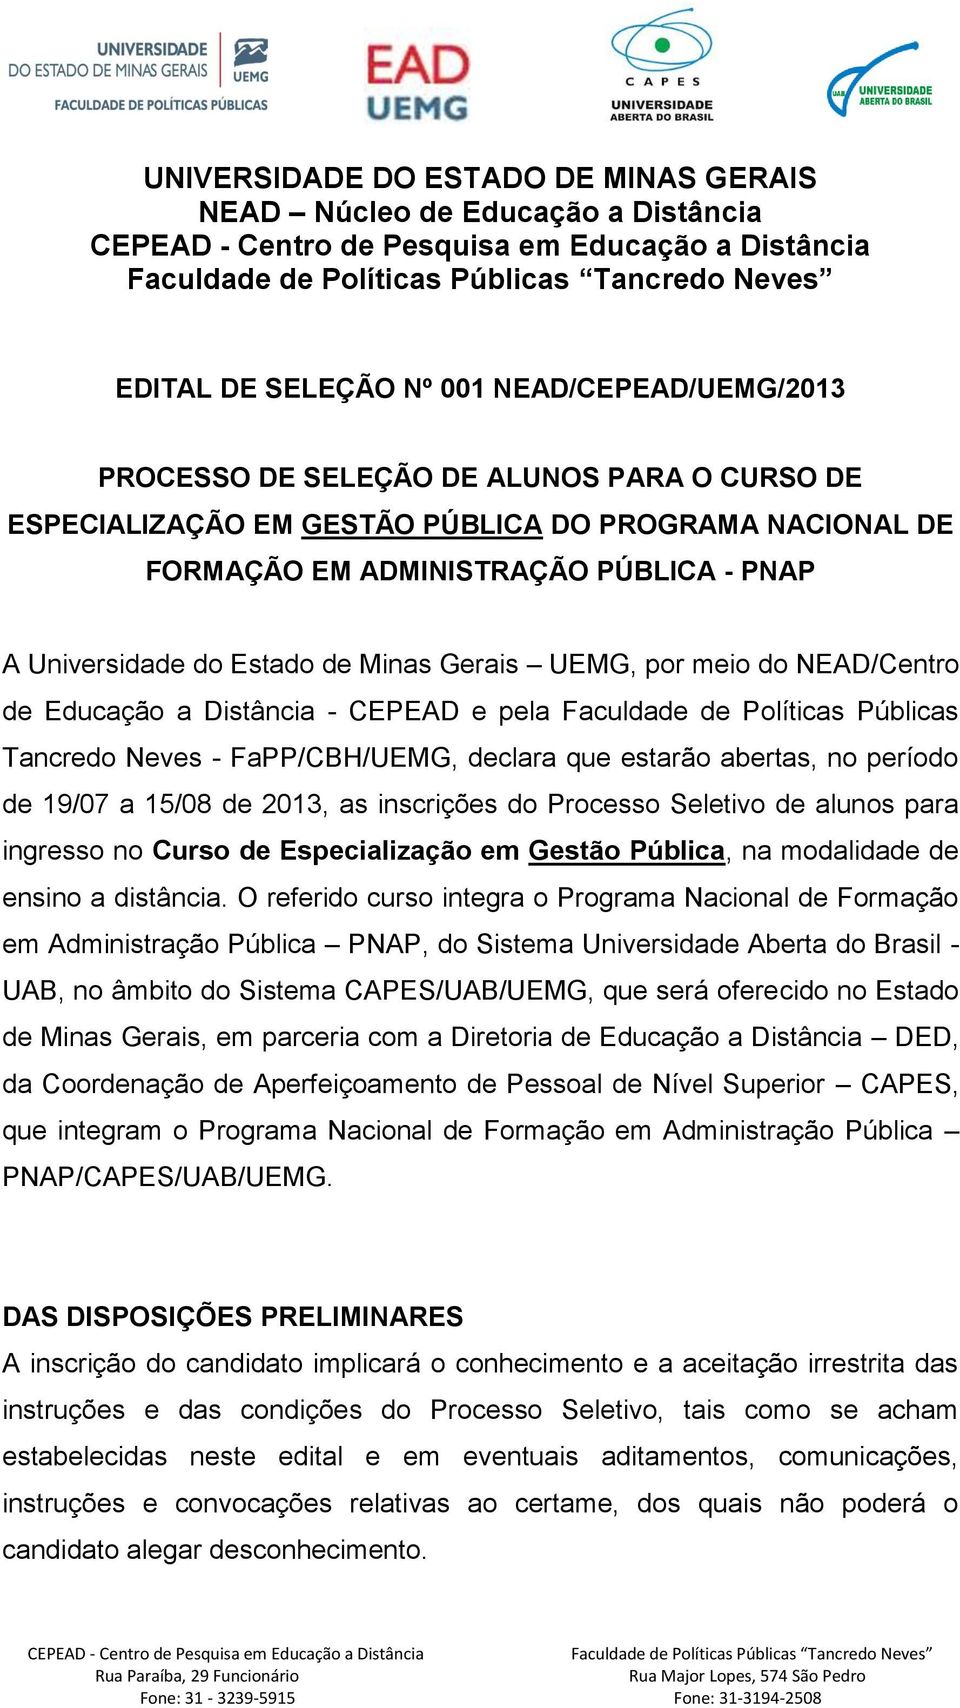 abertas, no período de 19/07 a 15/08 de 2013, as inscrições do Processo Seletivo de alunos para ingresso no Curso de Especialização em Gestão Pública, na modalidade de ensino a distância.